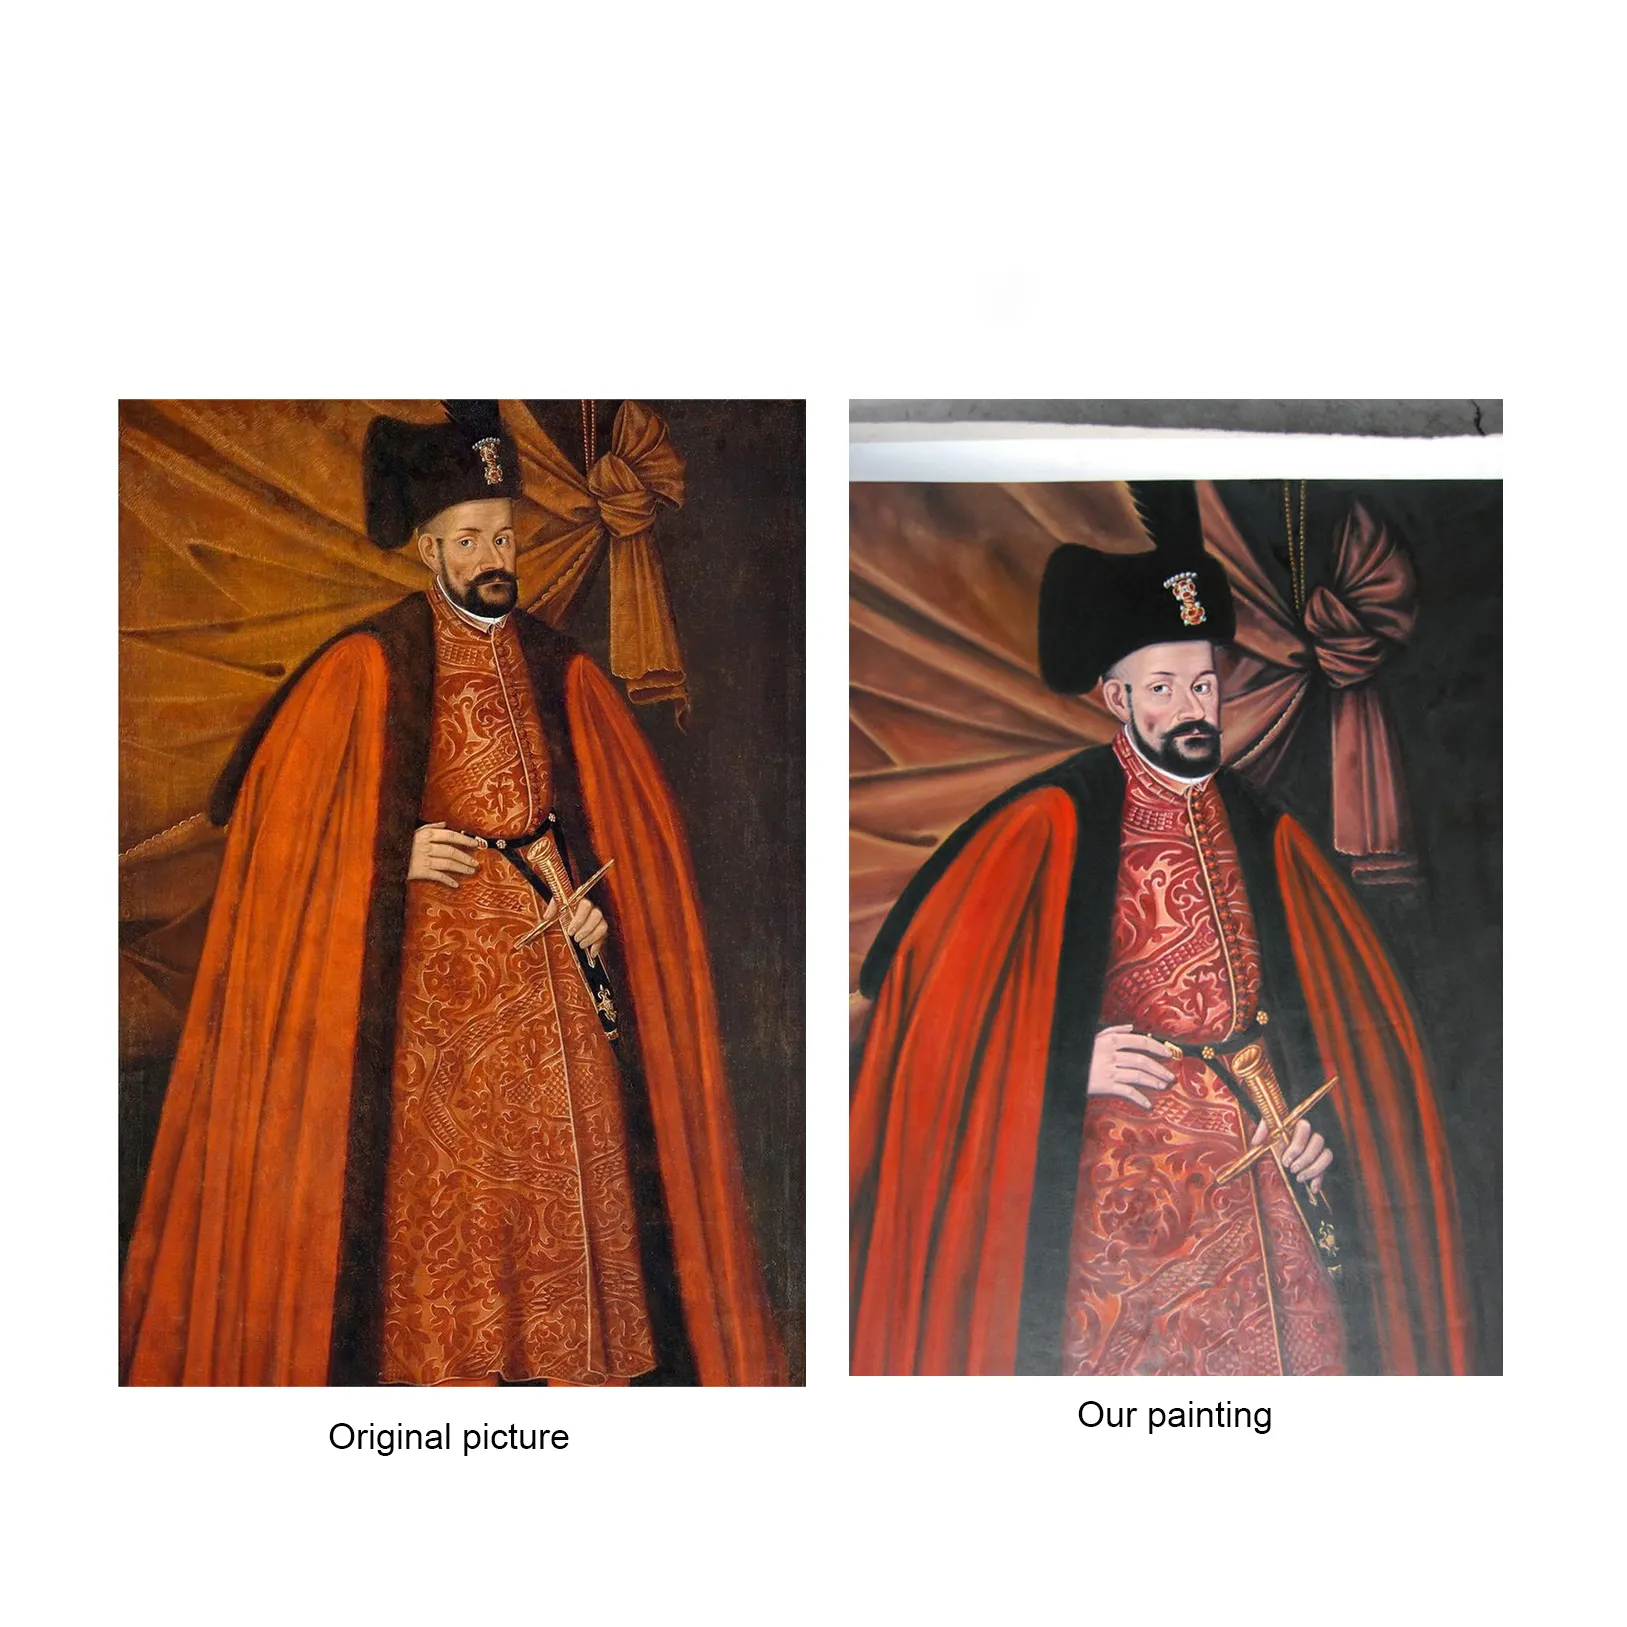 لوحة زيتية لشهيرة Cuadro عالية الجودة, لوحة زيتية عتيقة بأشكال سيد قديمة لصورة فنية جدارية لمتحف أو معرض فني